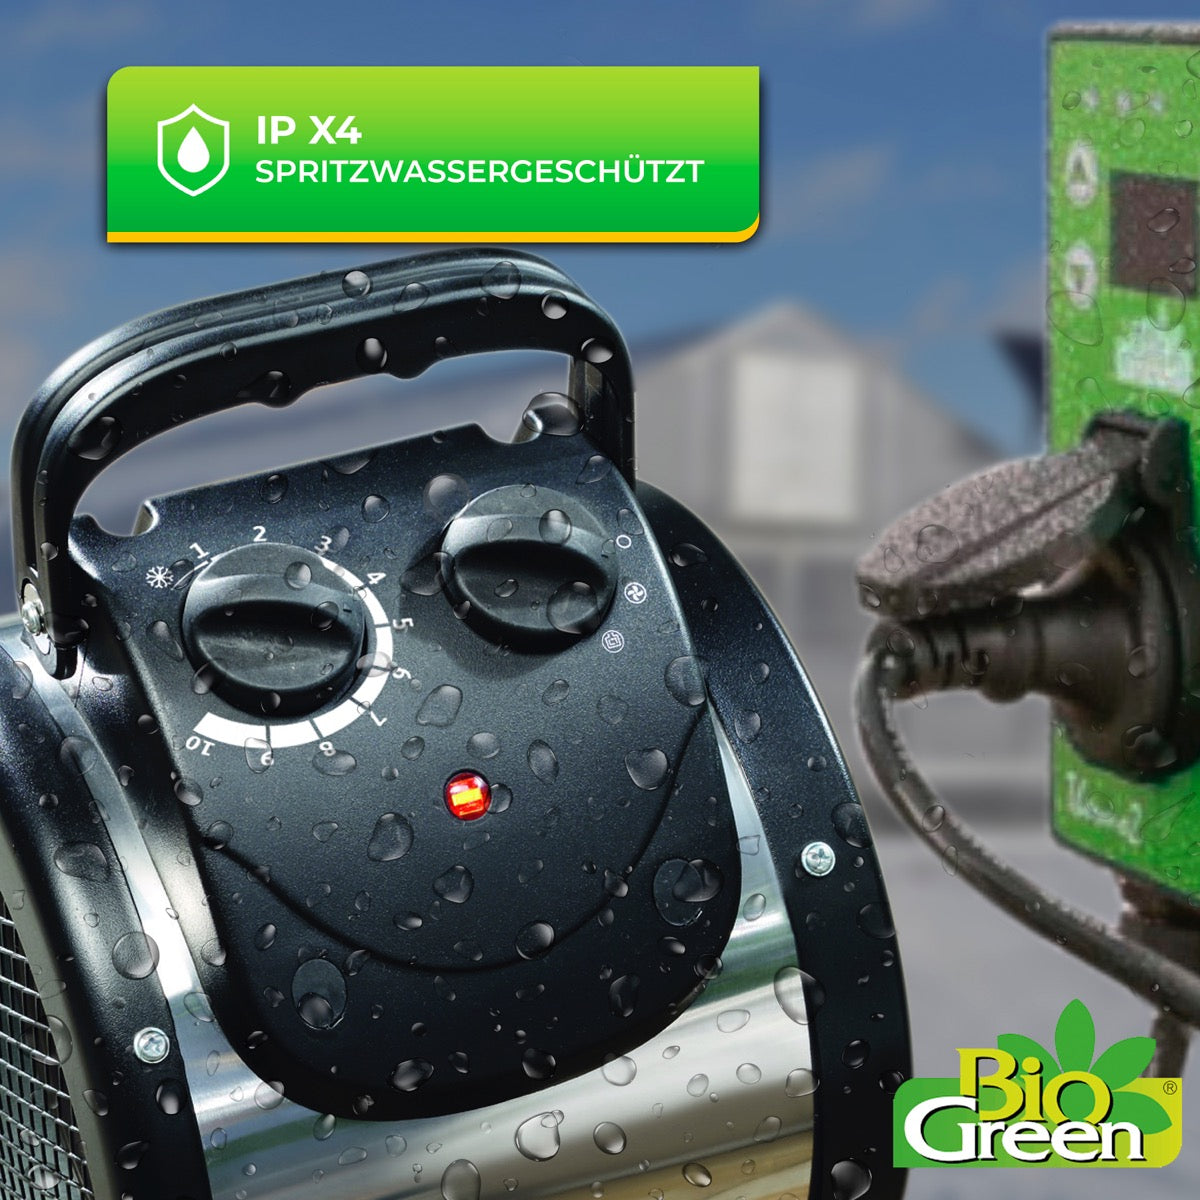 Bio Green Heizlüfter Palma mit Digital-Thermostat - spritzwassergeschützt IPX4